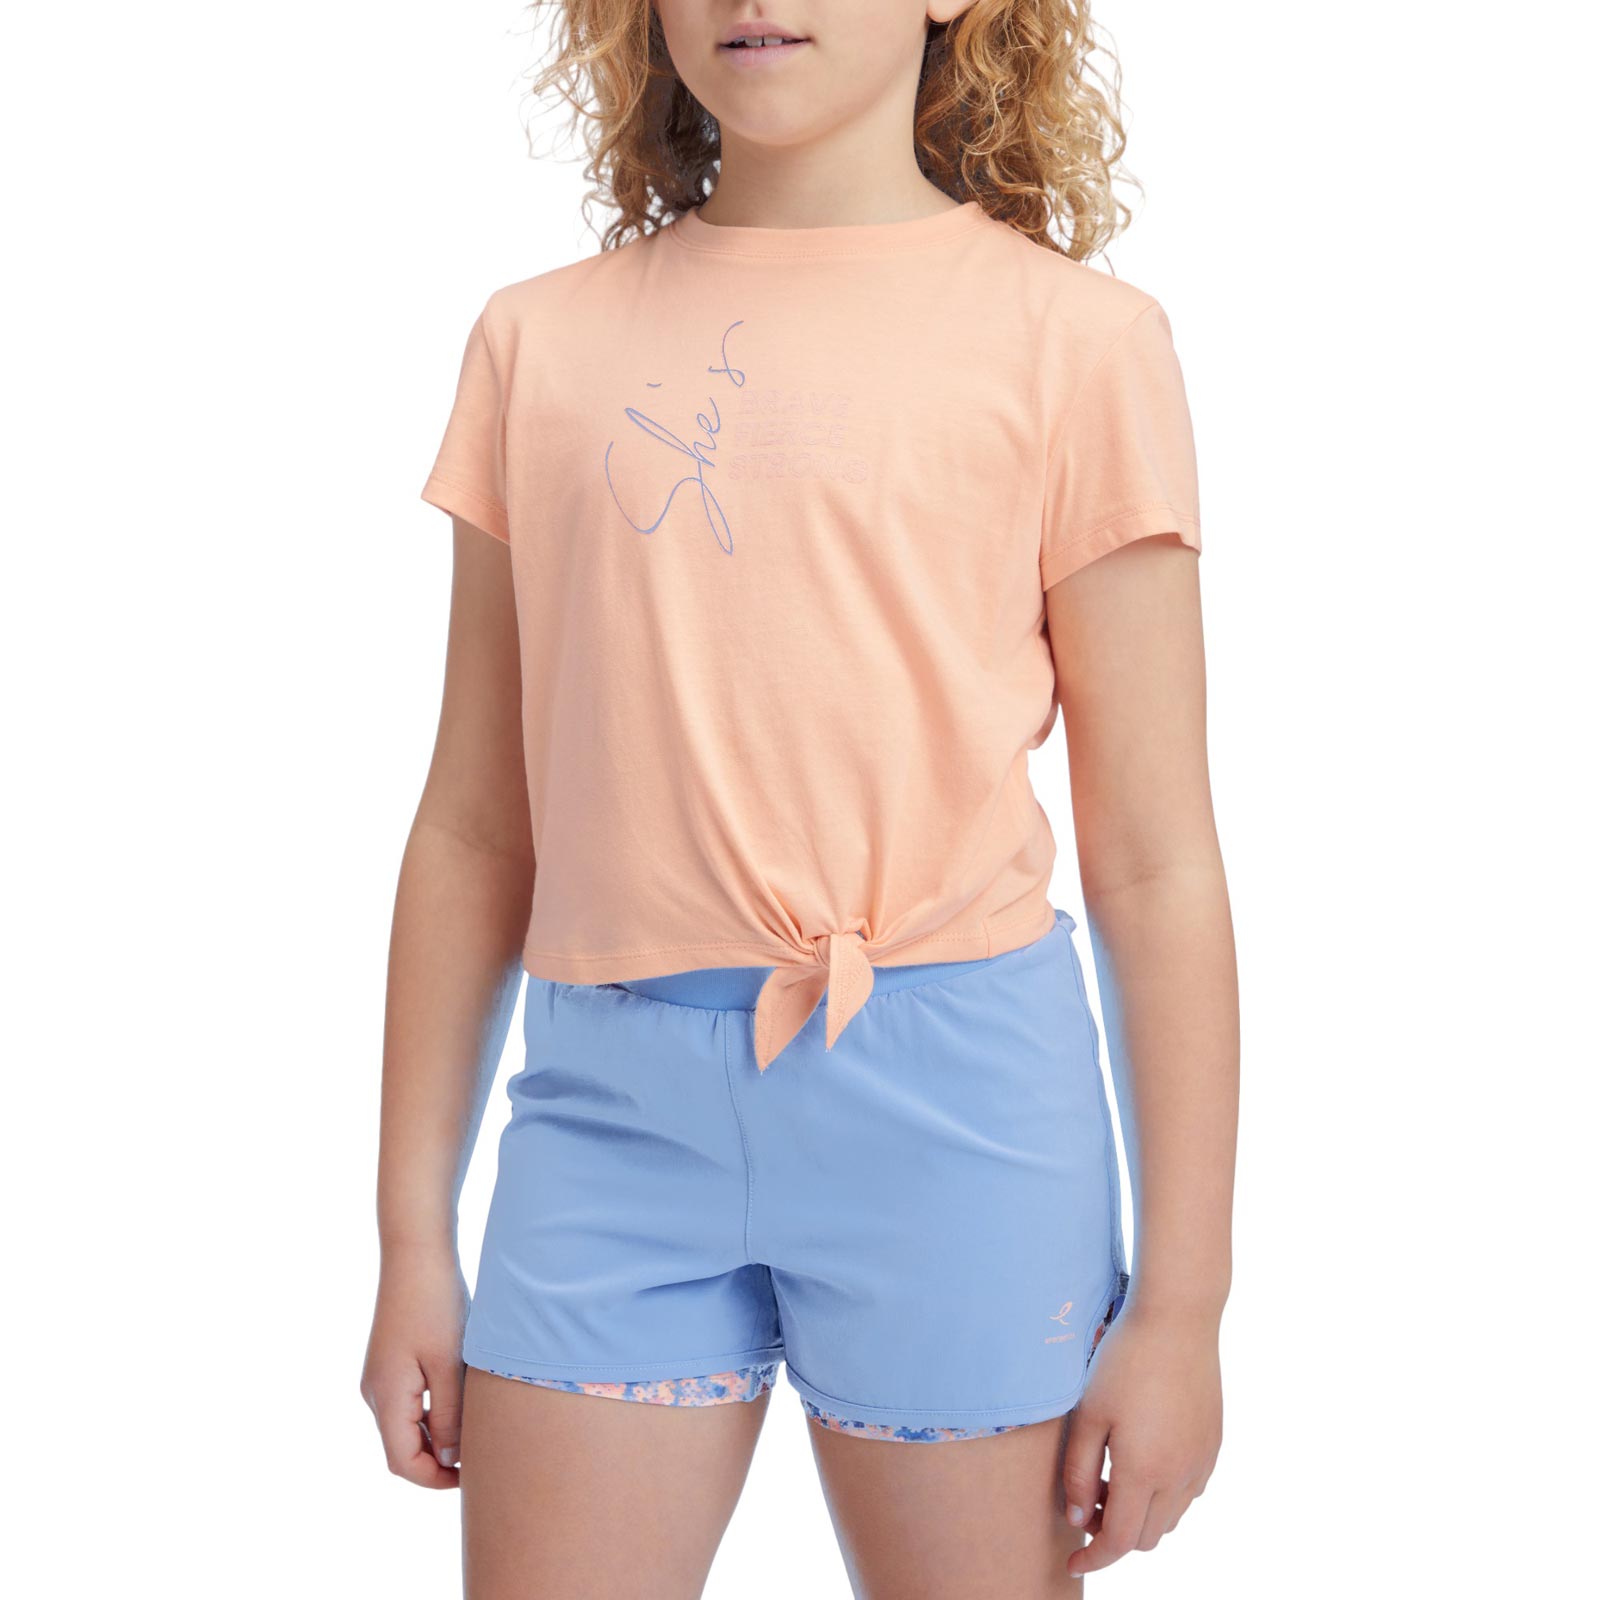 Energetics Leyla II Girls Short-Sleeve T-Shirt